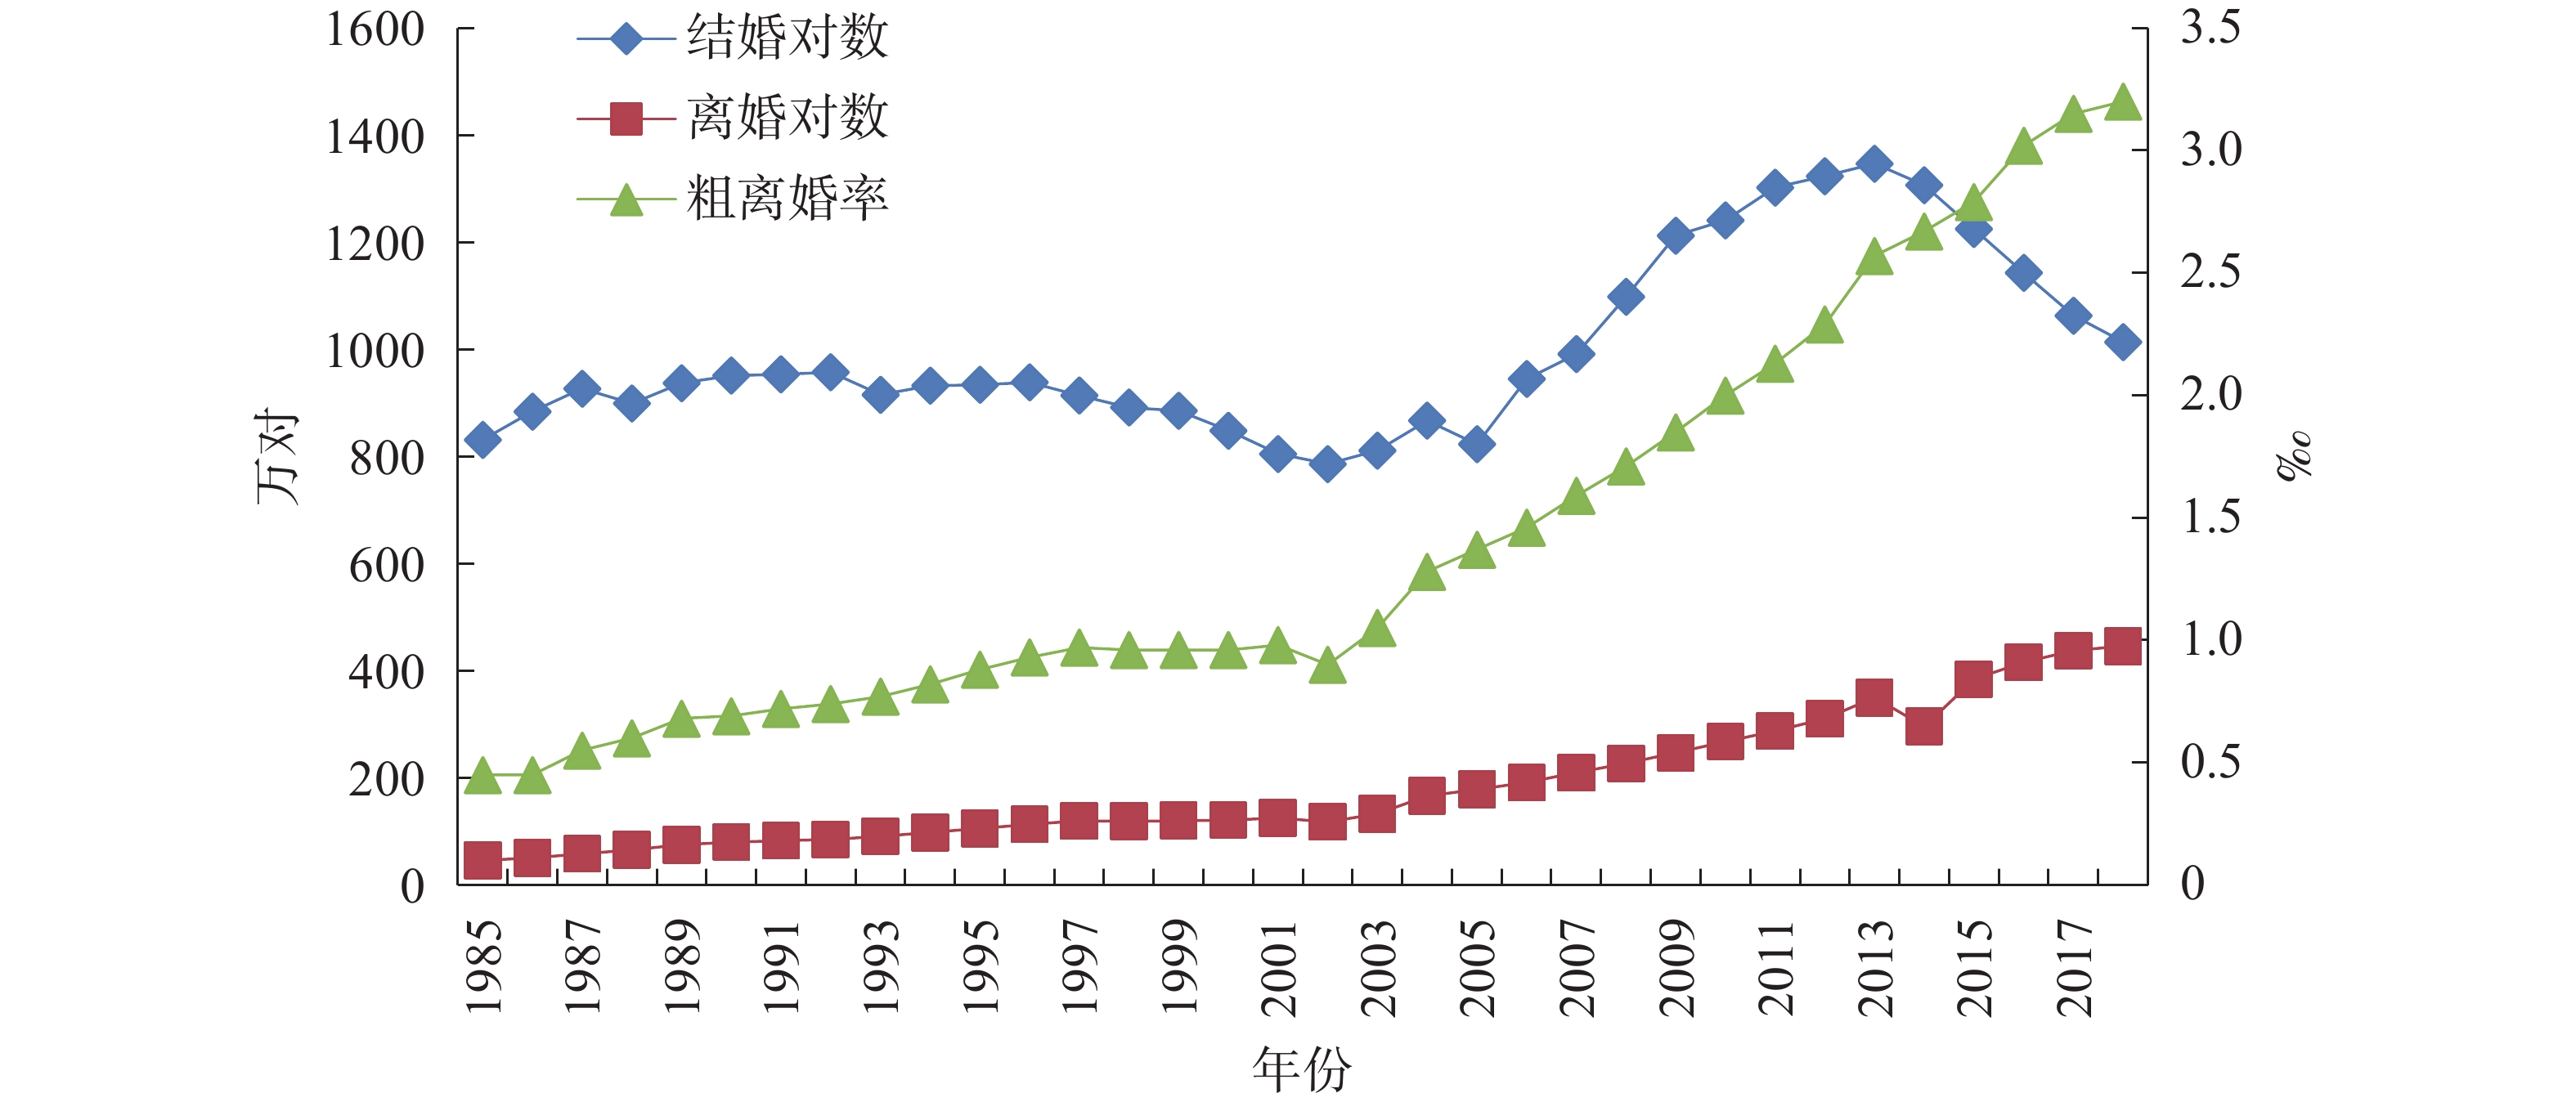 中国离婚率变动趋势、影响因素及对策